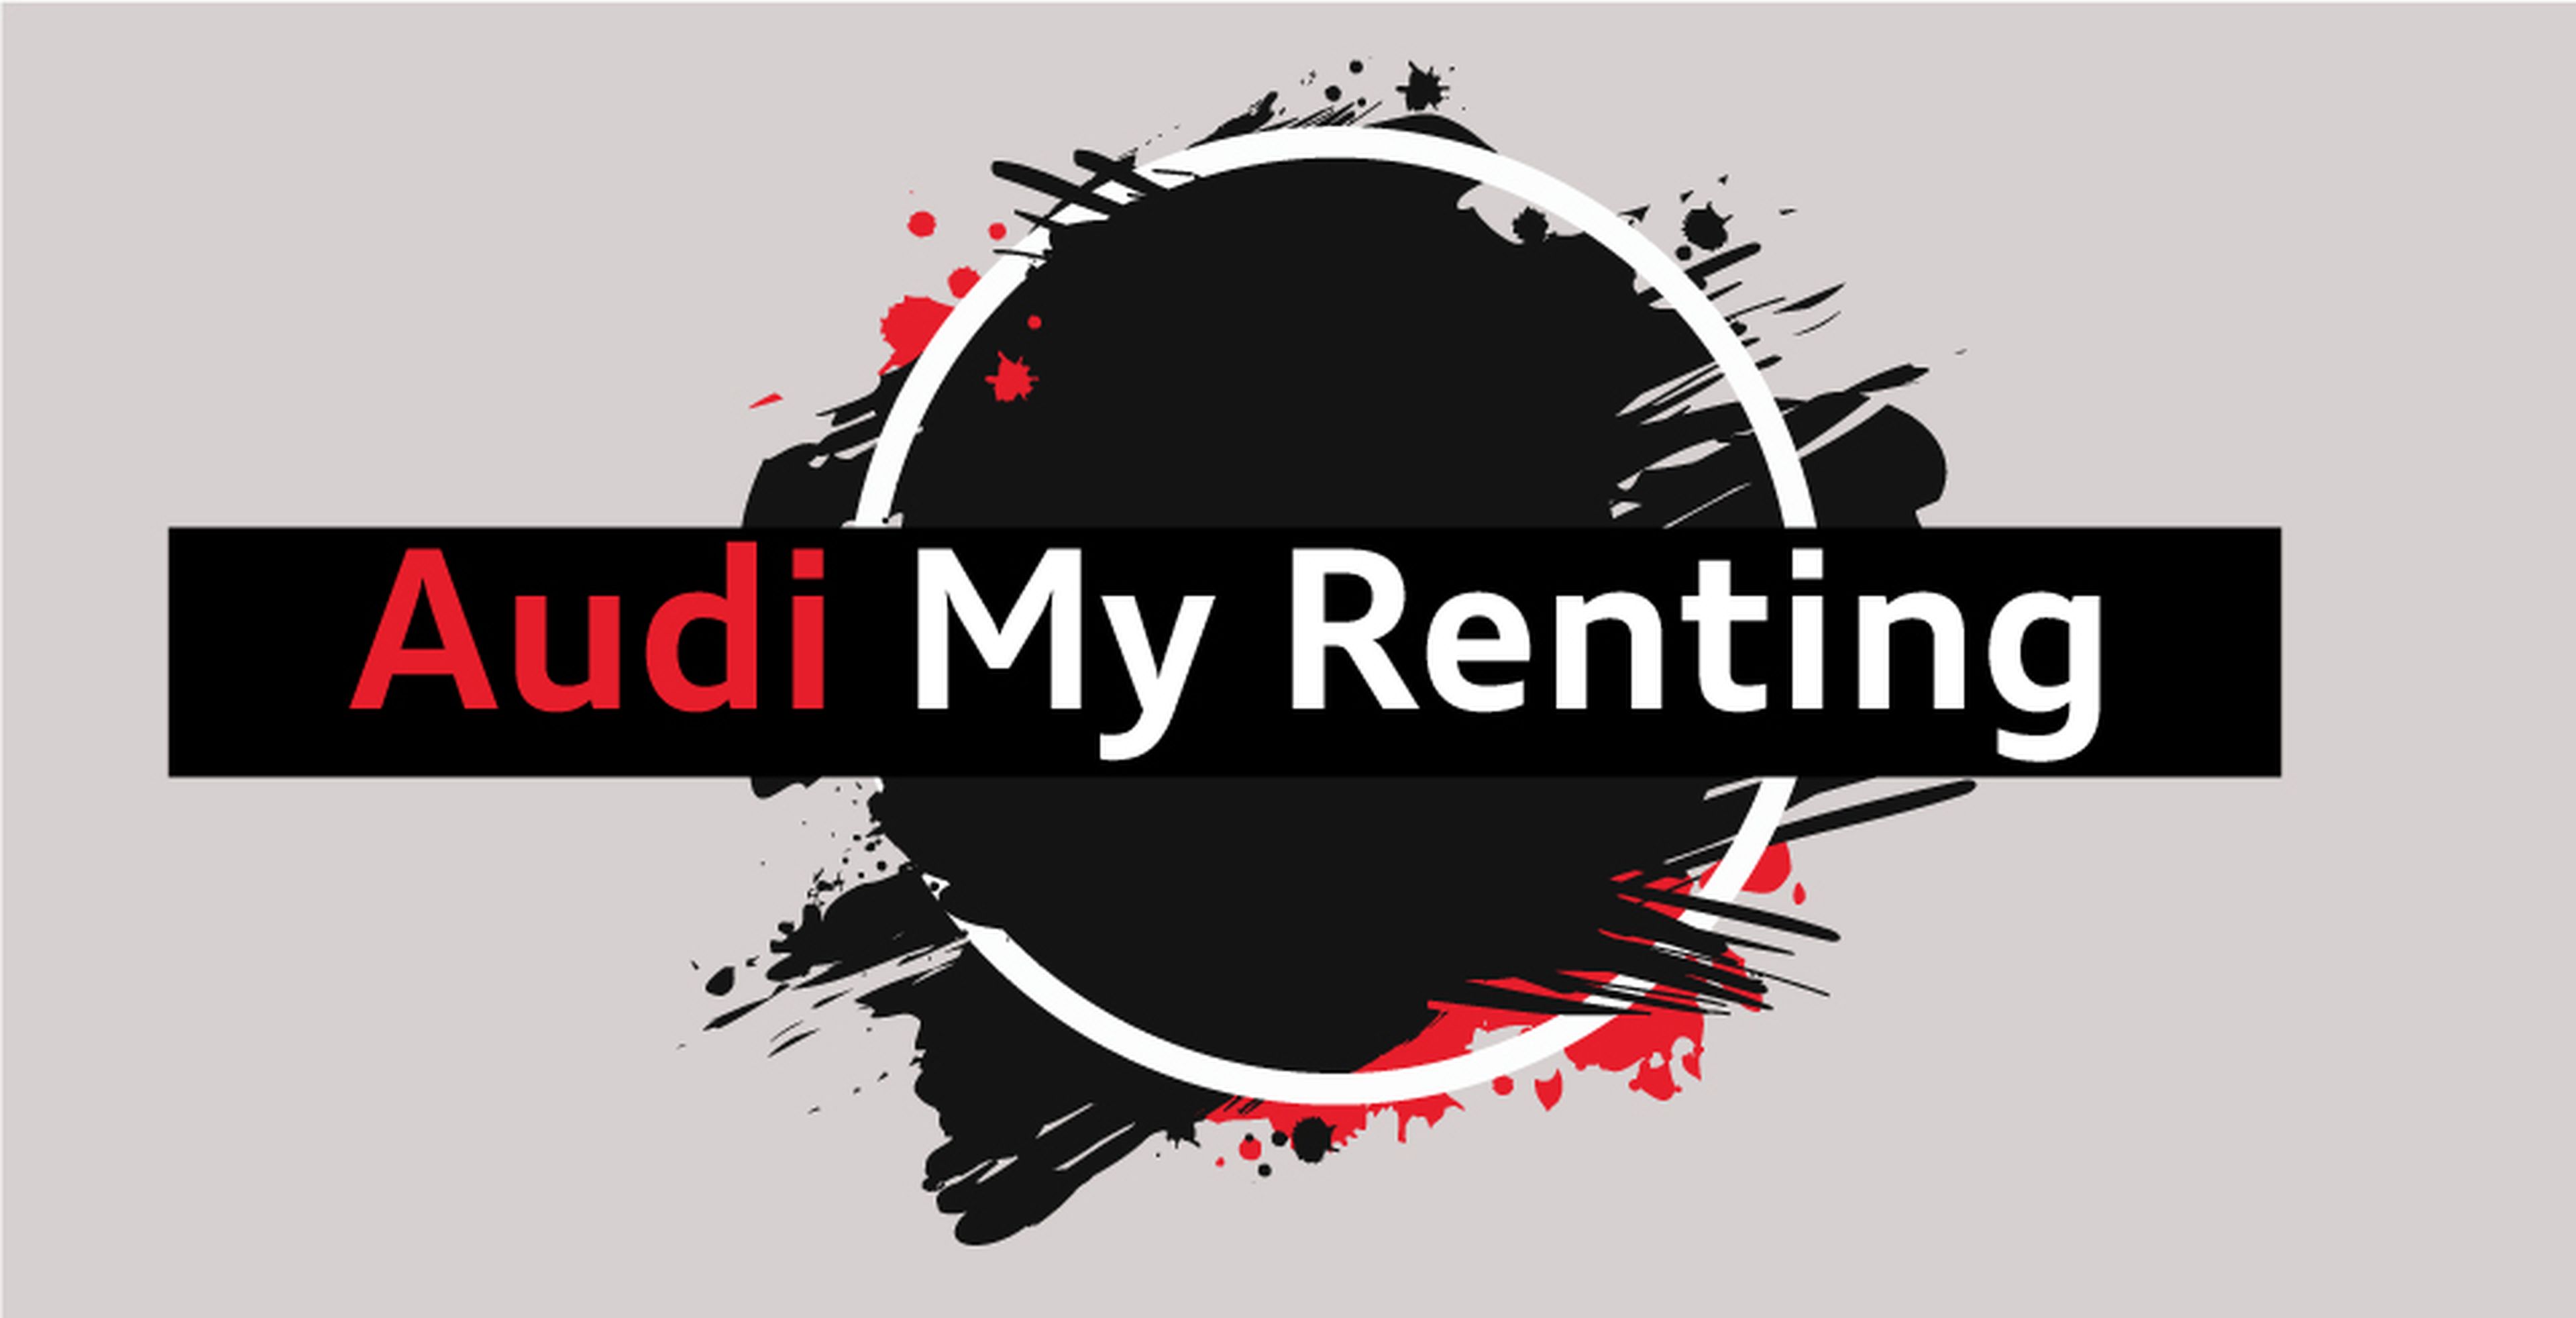 Audi renting